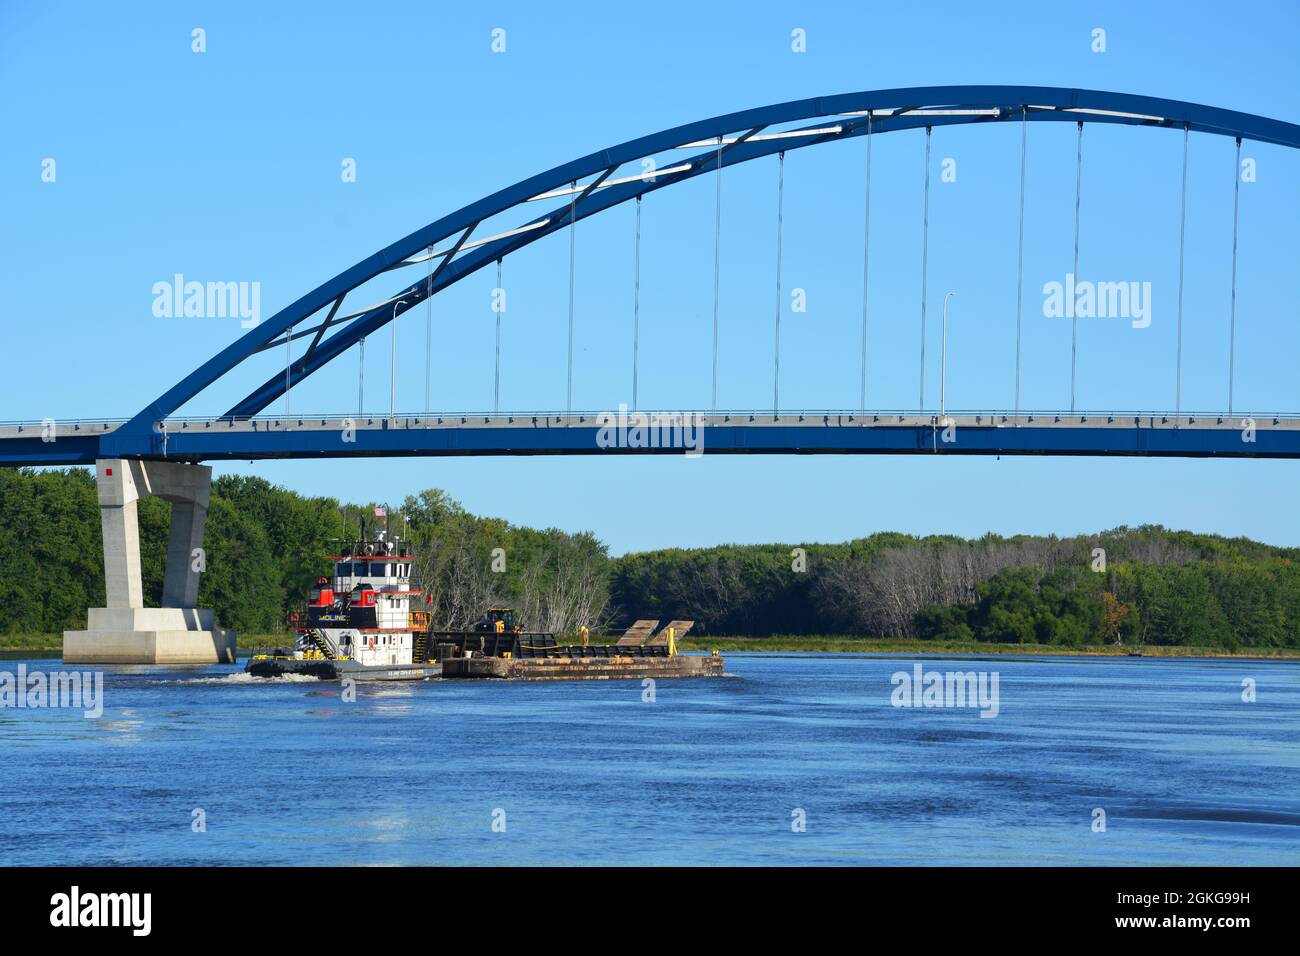 Un remorqueur de la compagnie Army Corp of Engineering pousse une barge chargée de matériaux de construction sur le fleuve Mississippi en passant par Savanna, Illinois. Banque D'Images